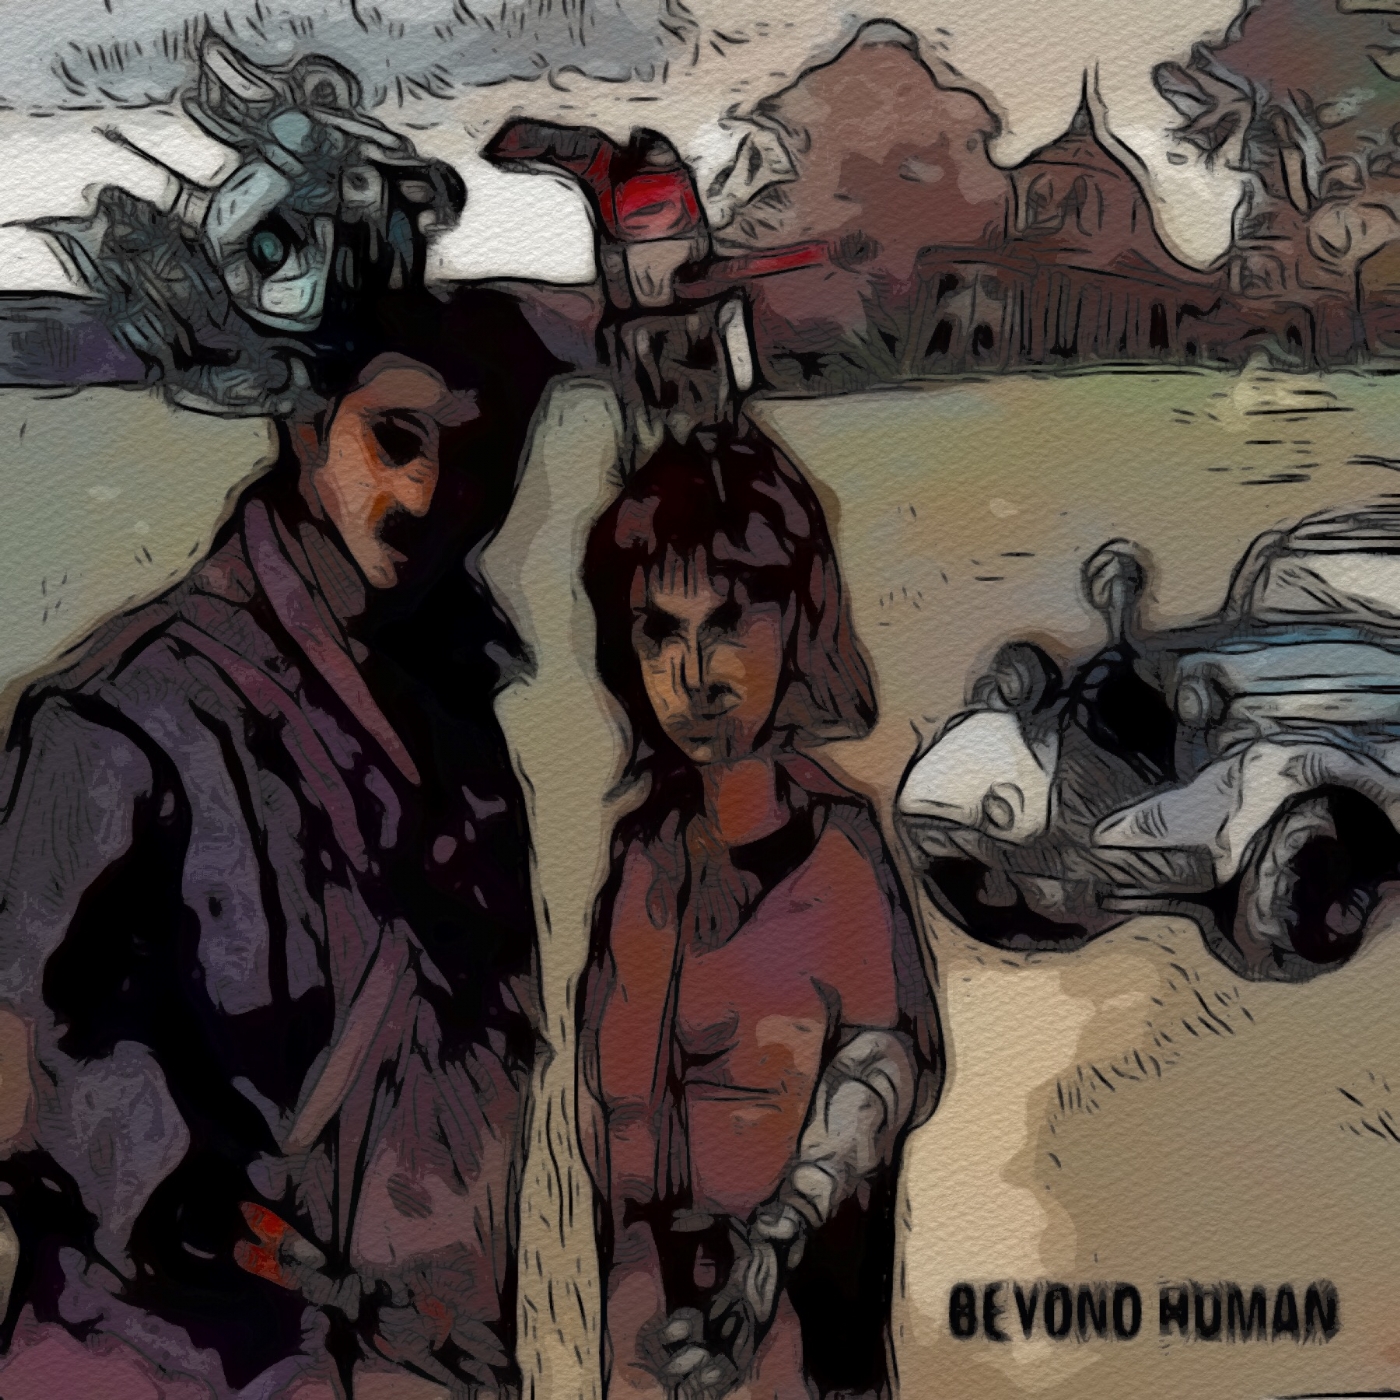 Beyond human | Tegning